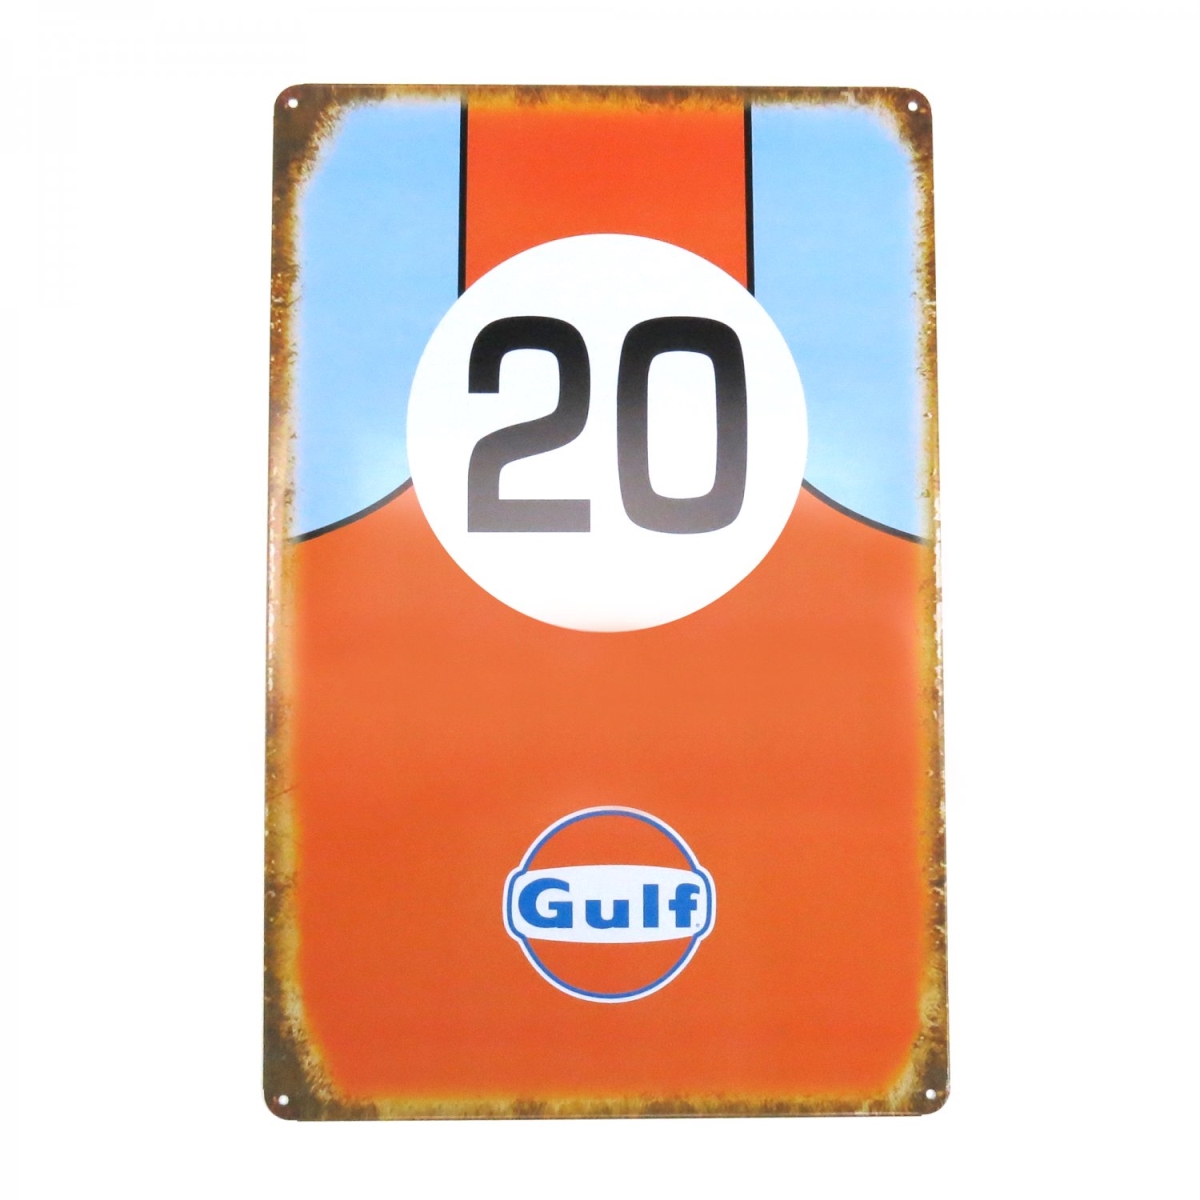 315503 Gulf Oil Racing Metal Sign